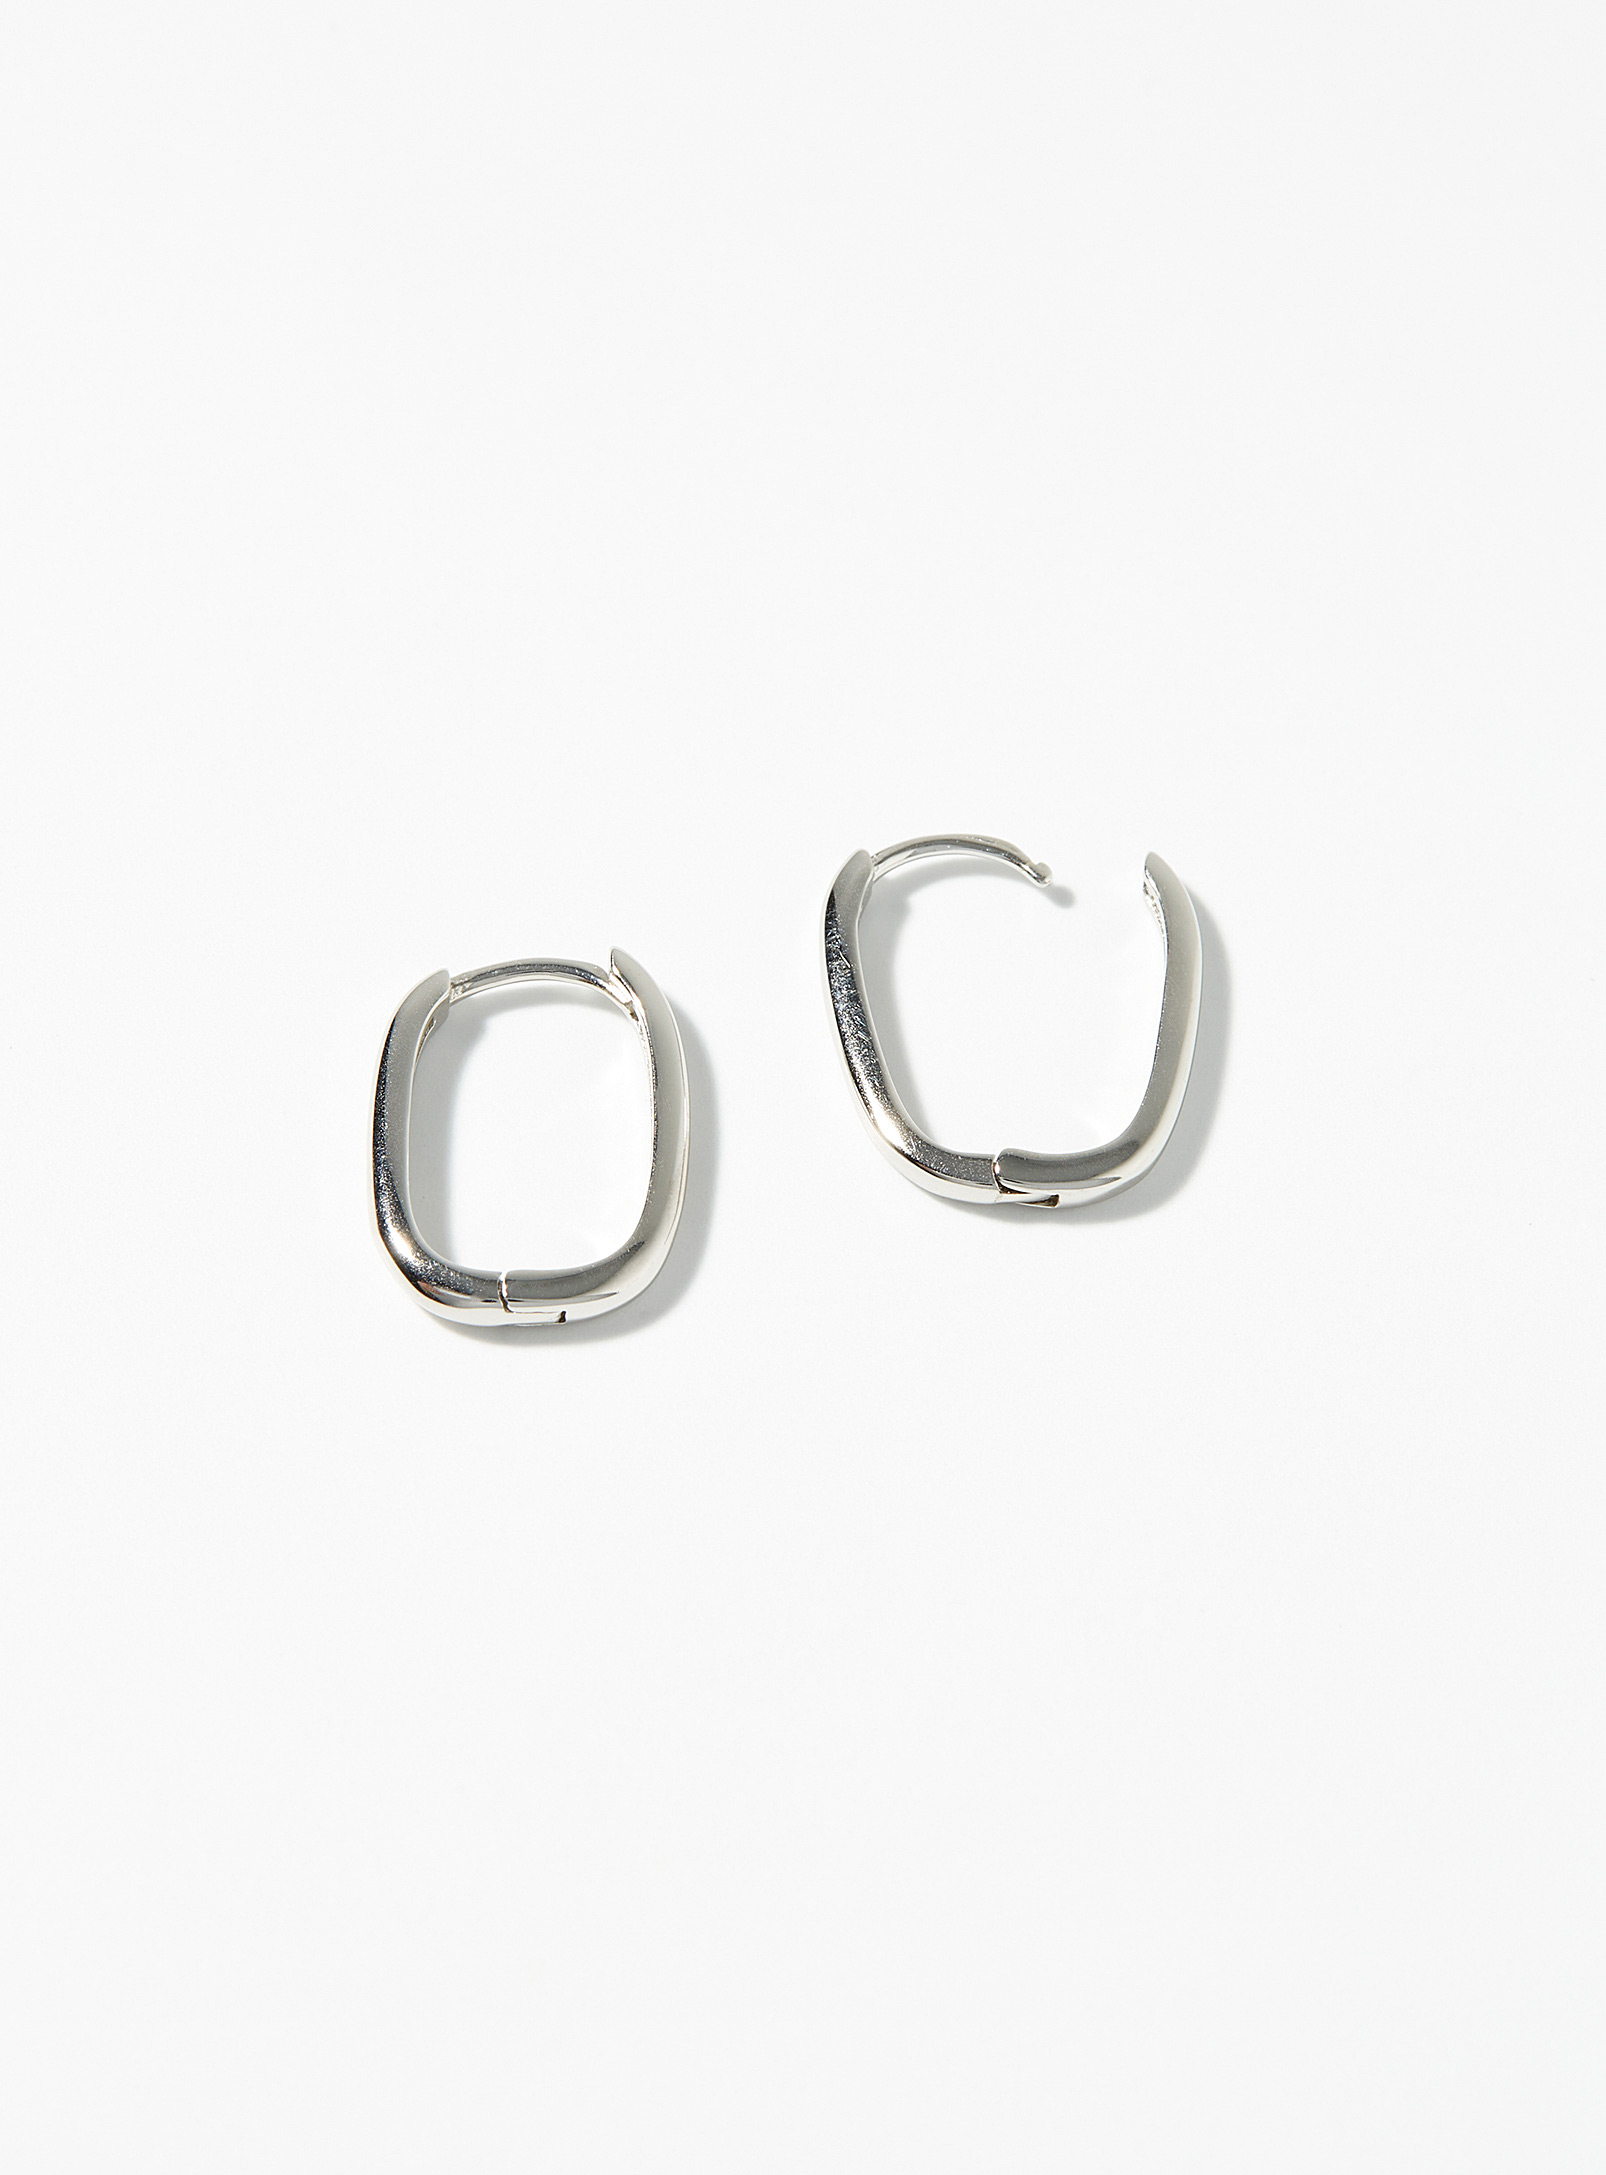 Simons - Women's Small silver oval Hoop Earrings